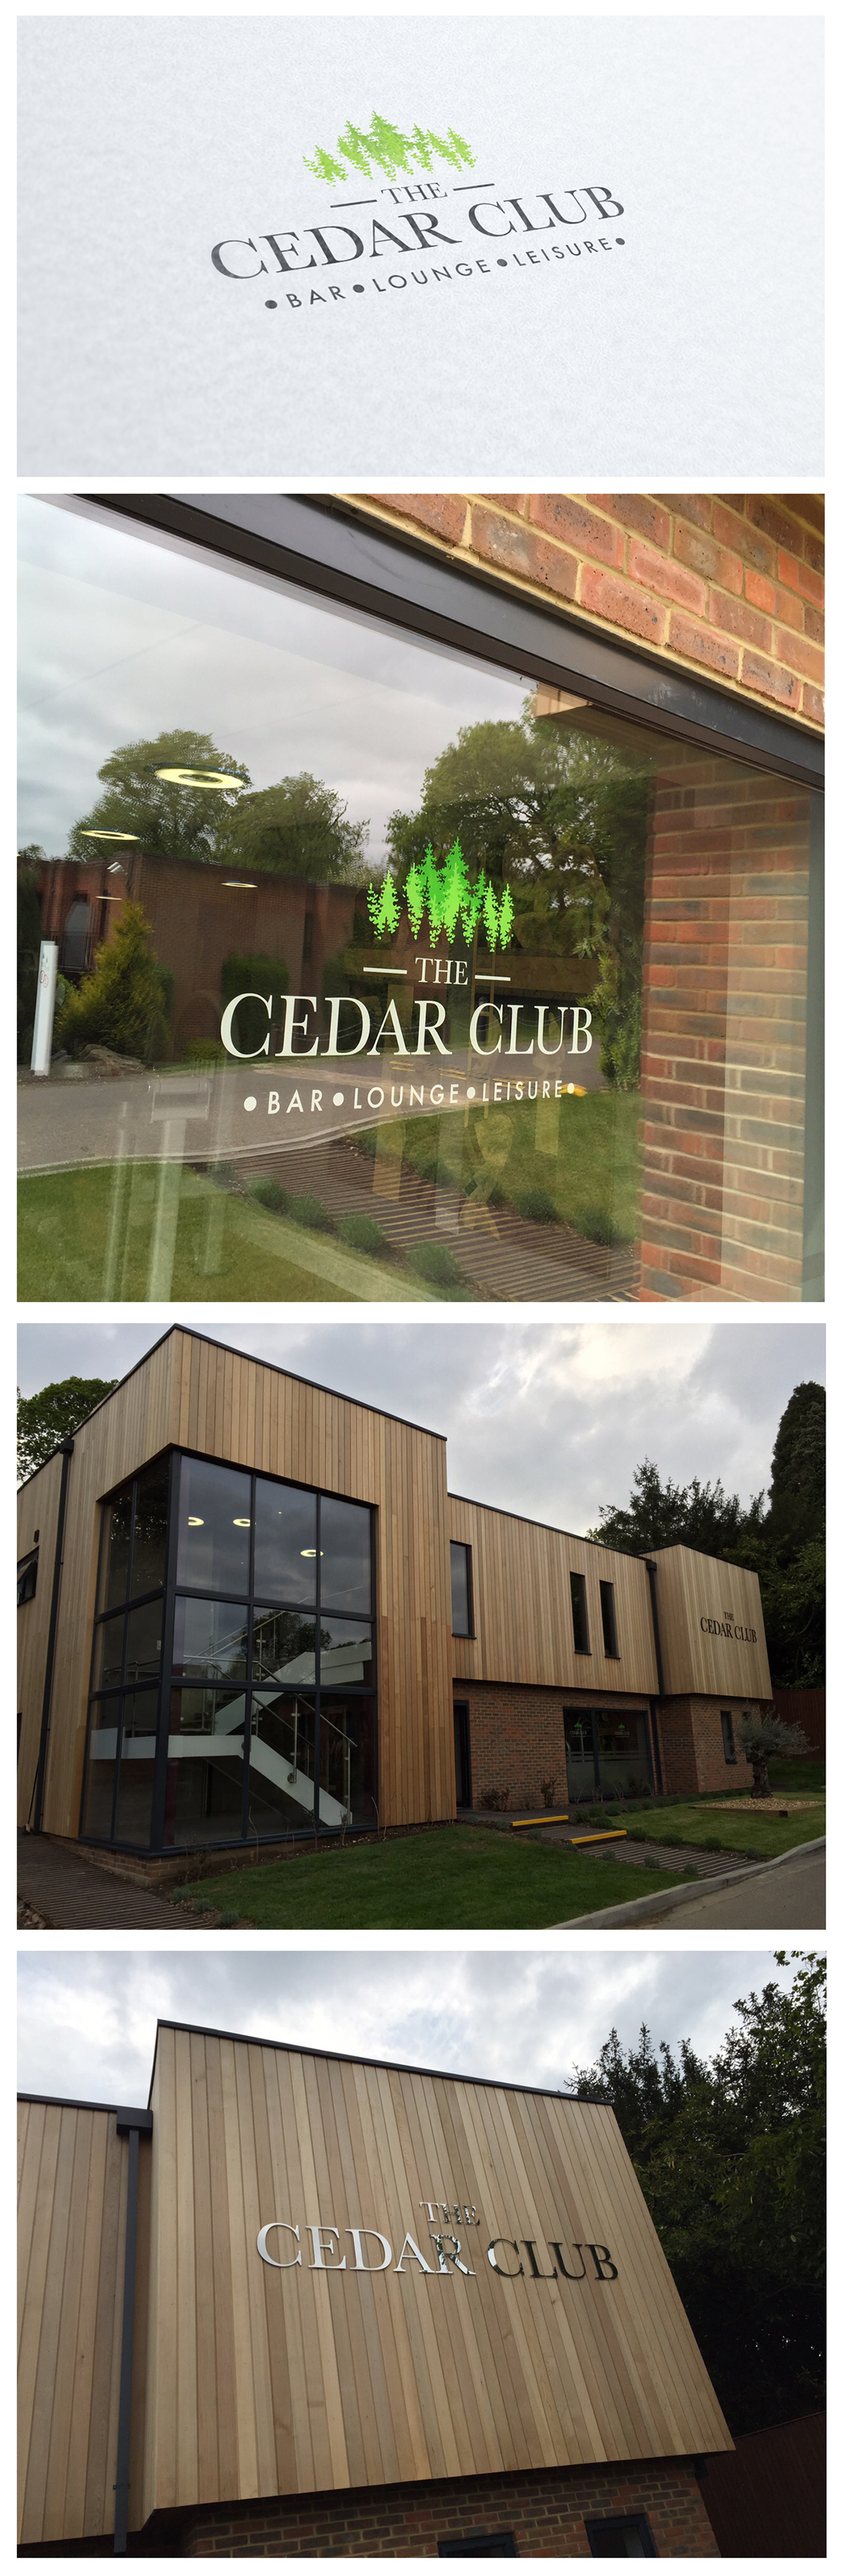 logo cedar club cedar tree tree logo green trees grey building Signage